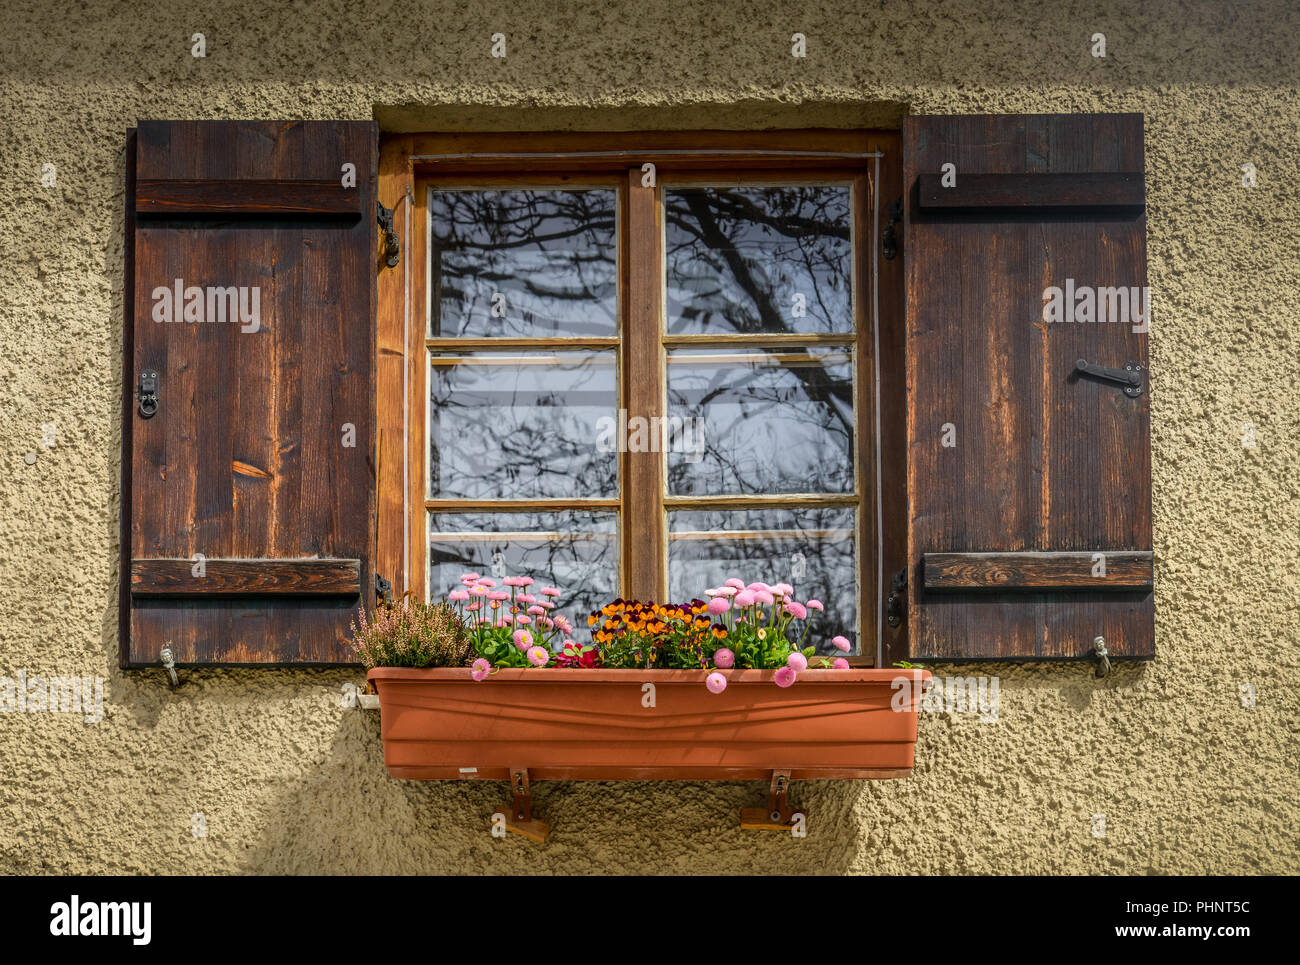 Fenster, Blumen, Preysingstrasse, Alt-Haidhausen, Haidhausen, Monaco di Baviera, Deutschland Foto Stock